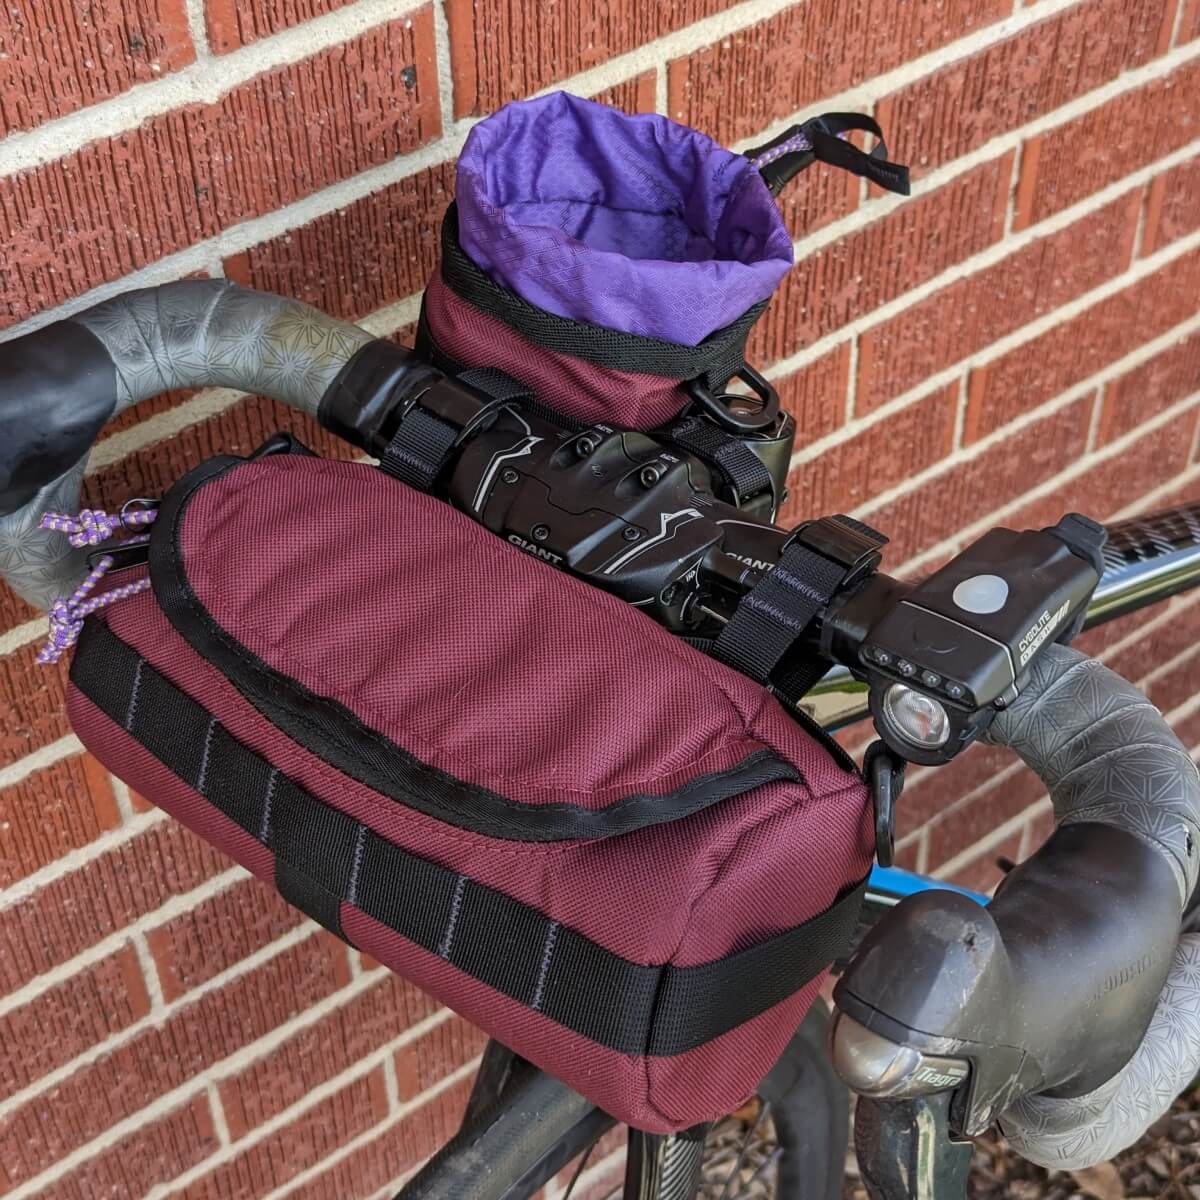 HandleStash burrito bag and stem bag on bike, color purple